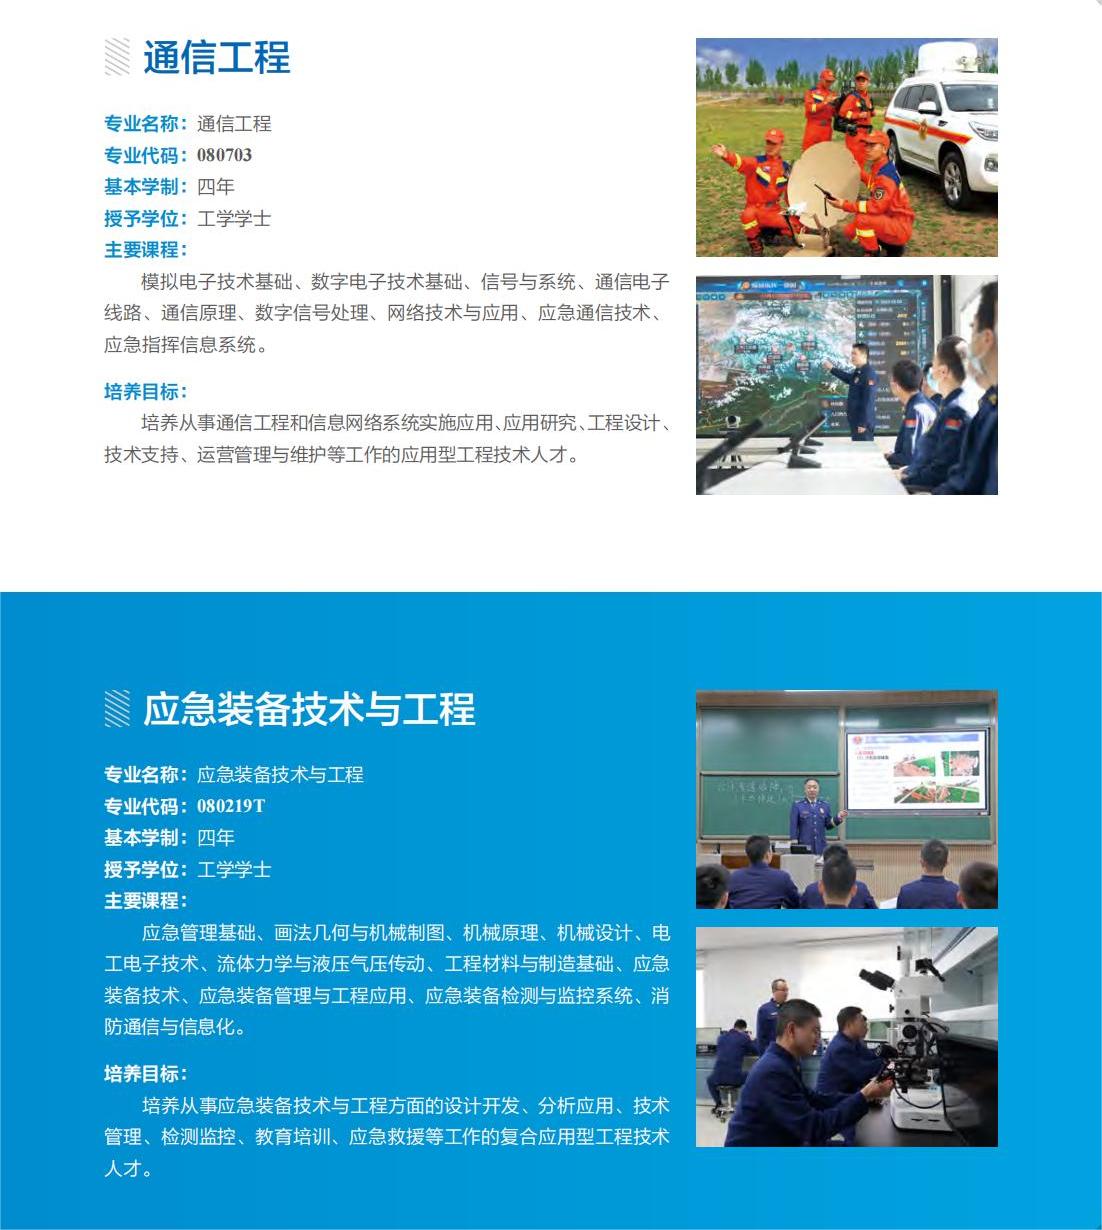 中国消防救援学院2024年本科招生章程